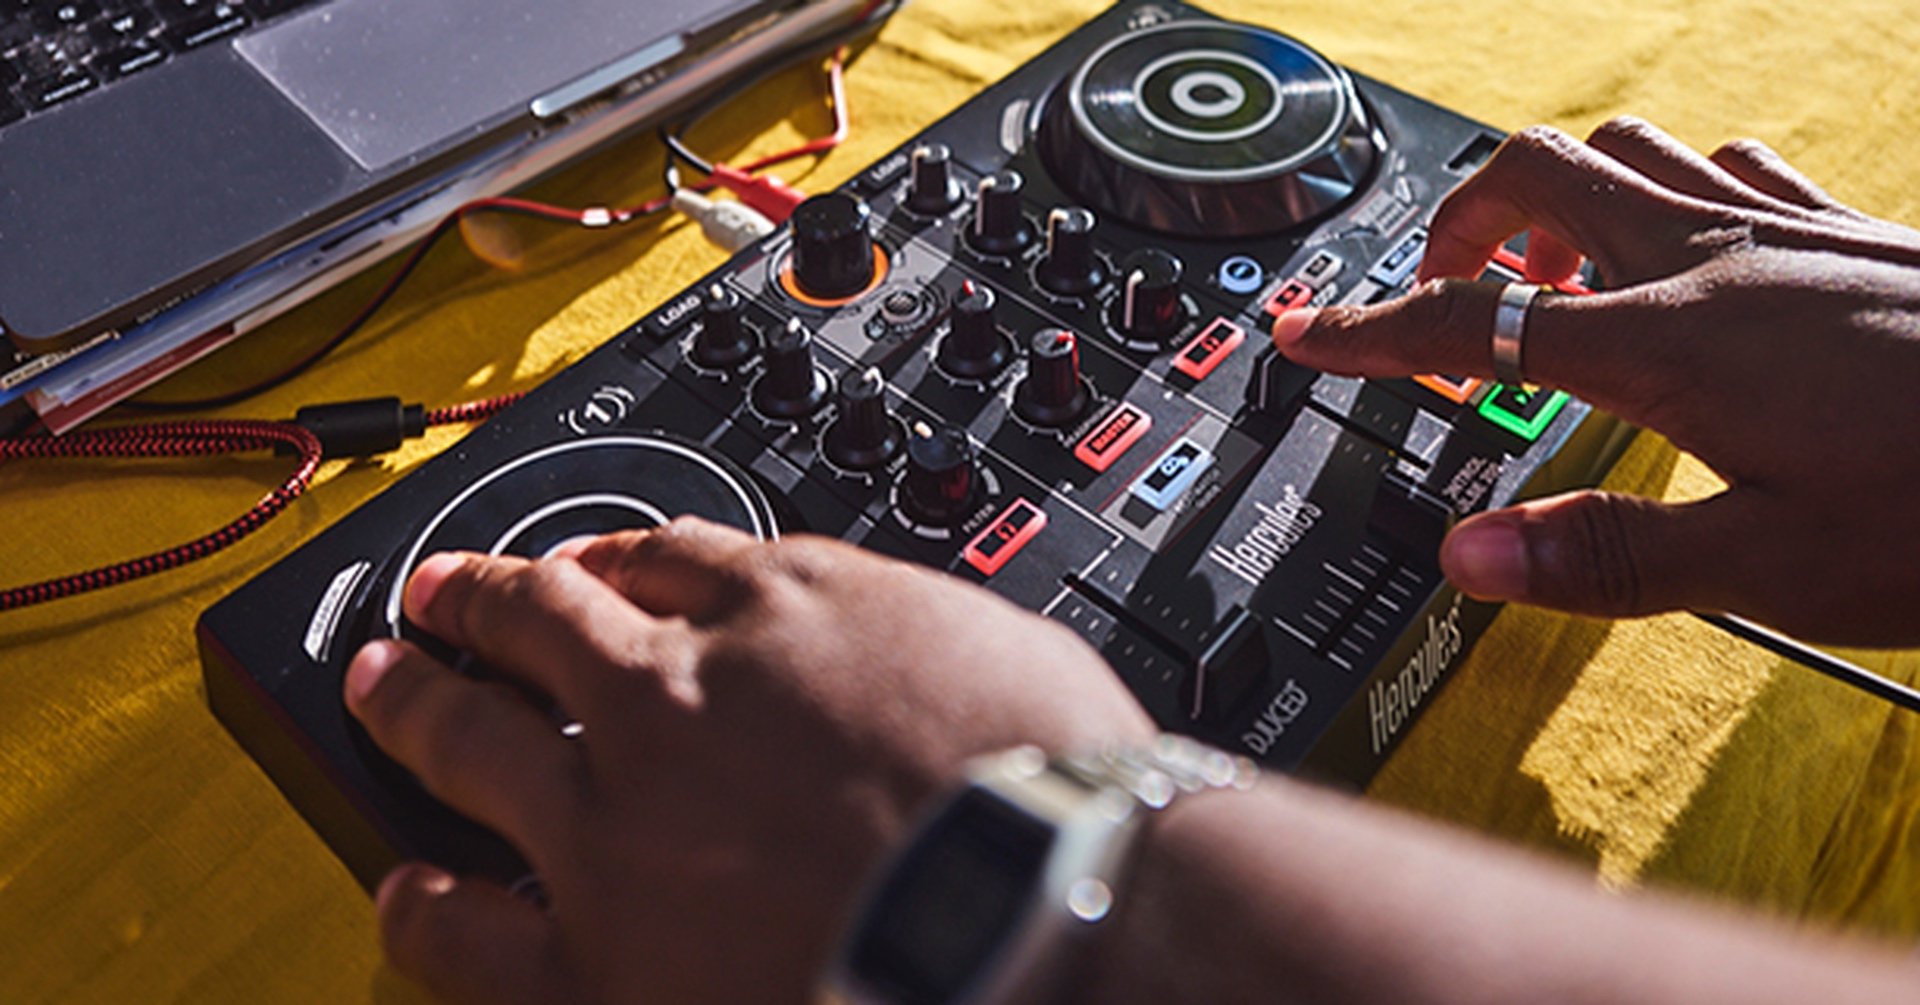 Hercules DJControl Inpulse 200 - Twoja przepustka do świata profesjonalnego DJ-ingu 